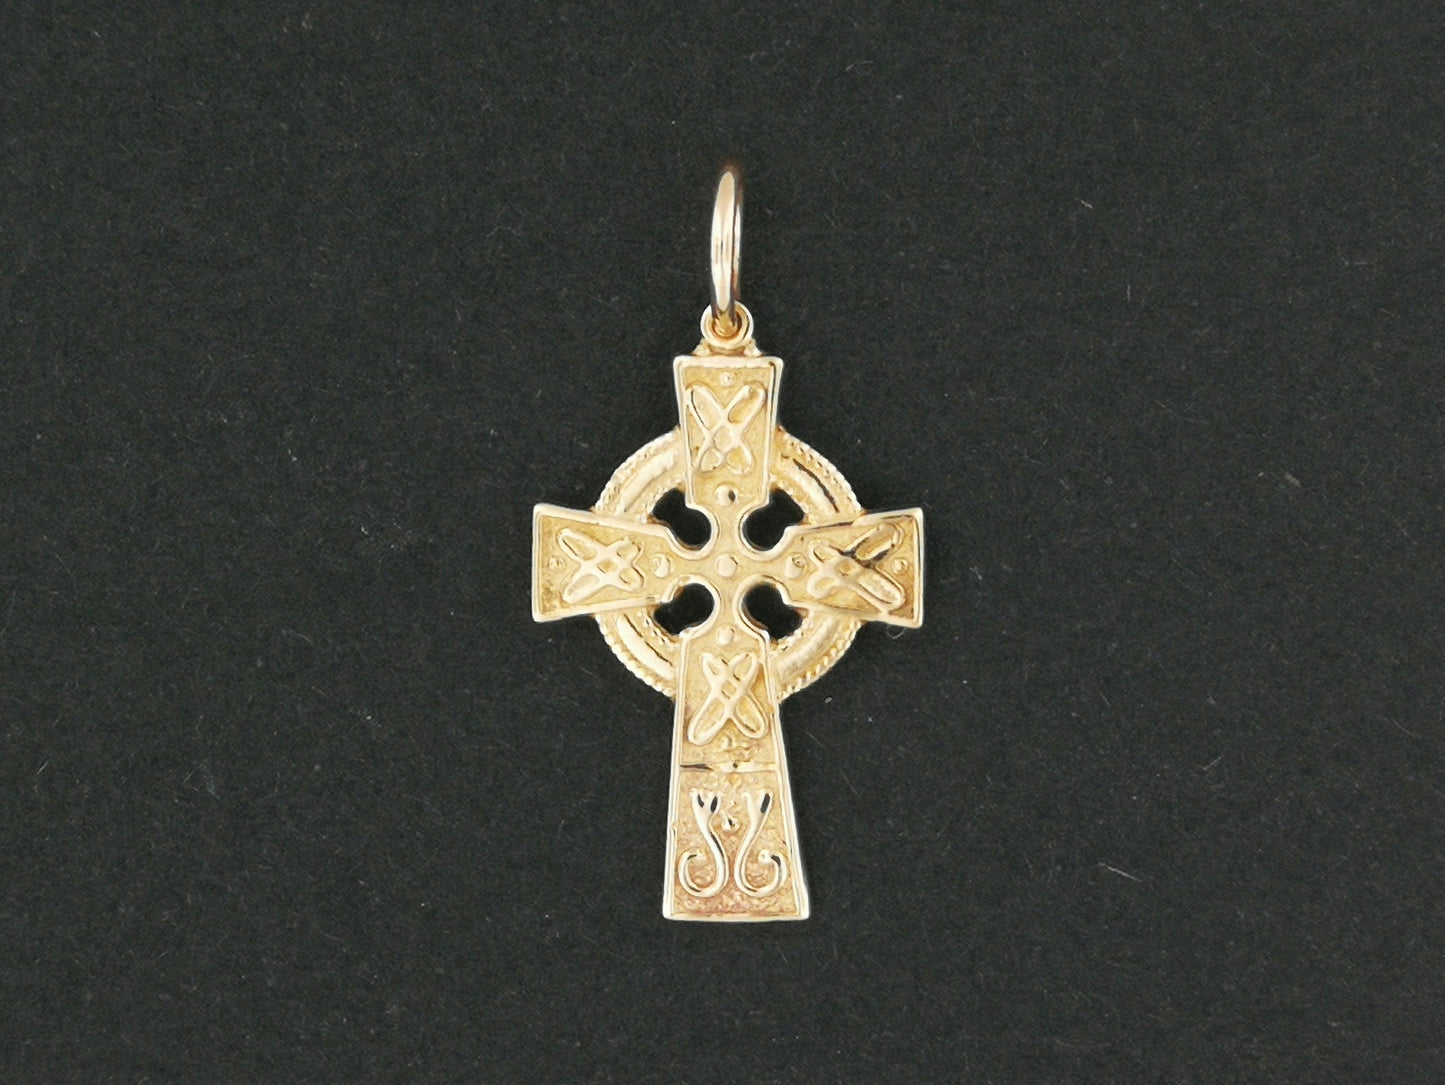 Petite croix celtique en or sur commande